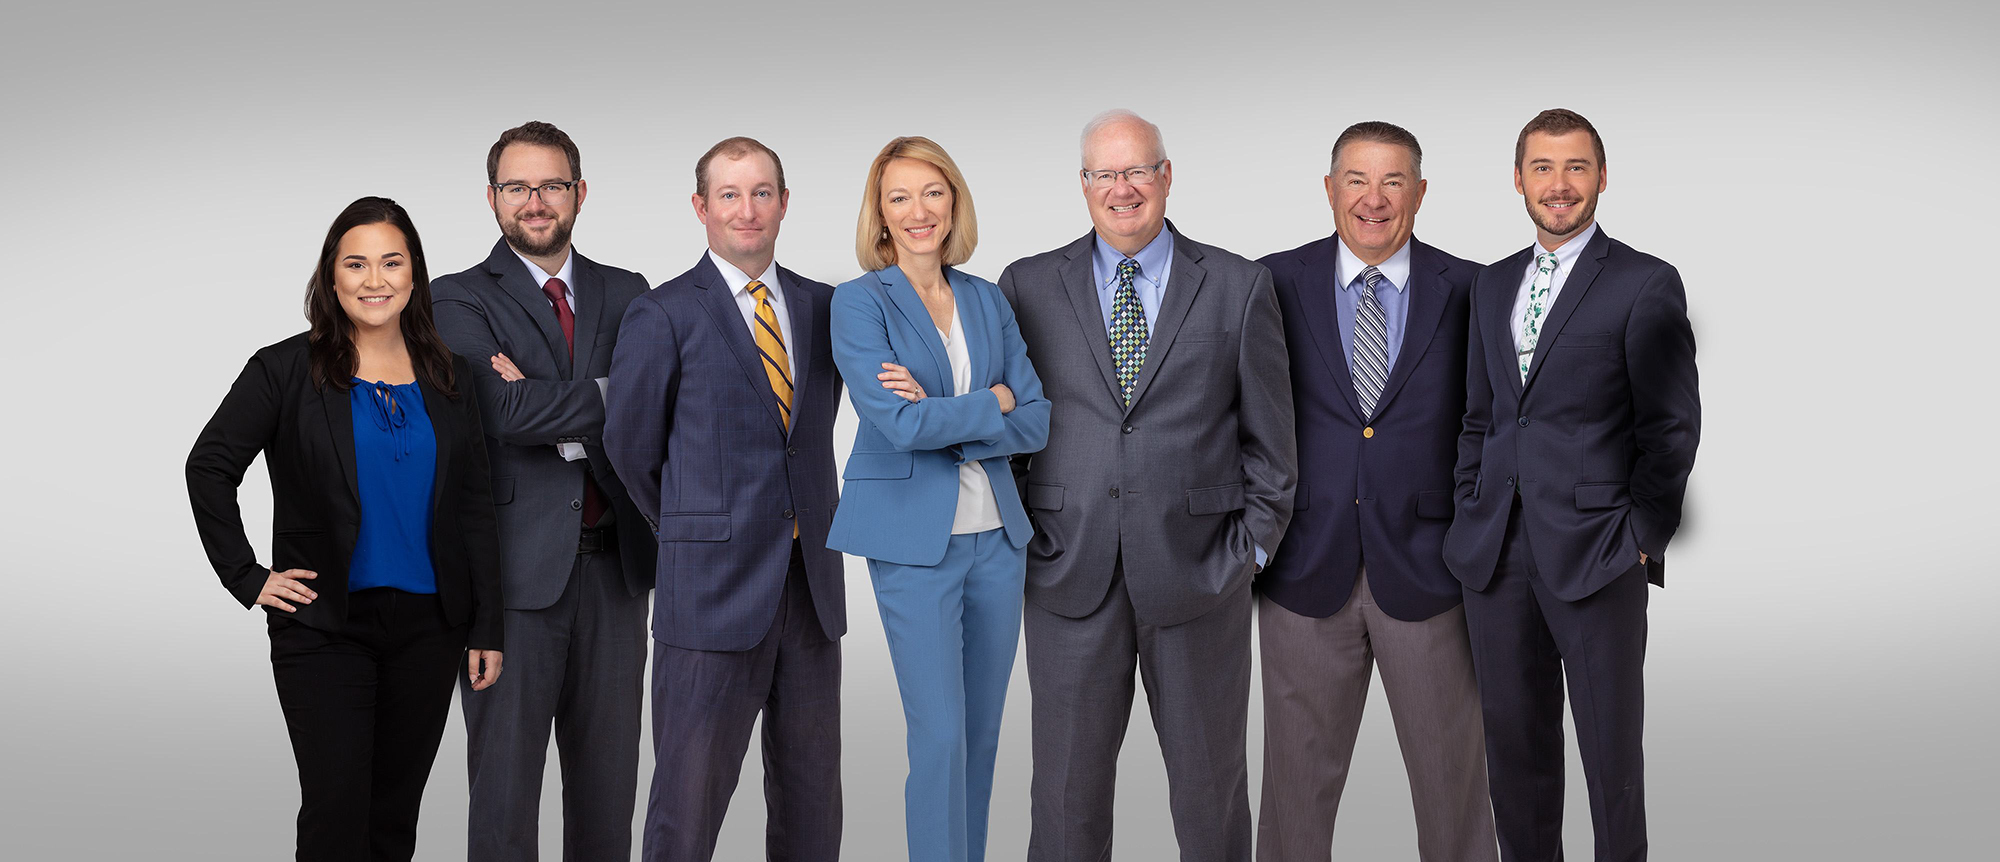 Meet Our Team Members | Ingram Financial Group in Florida